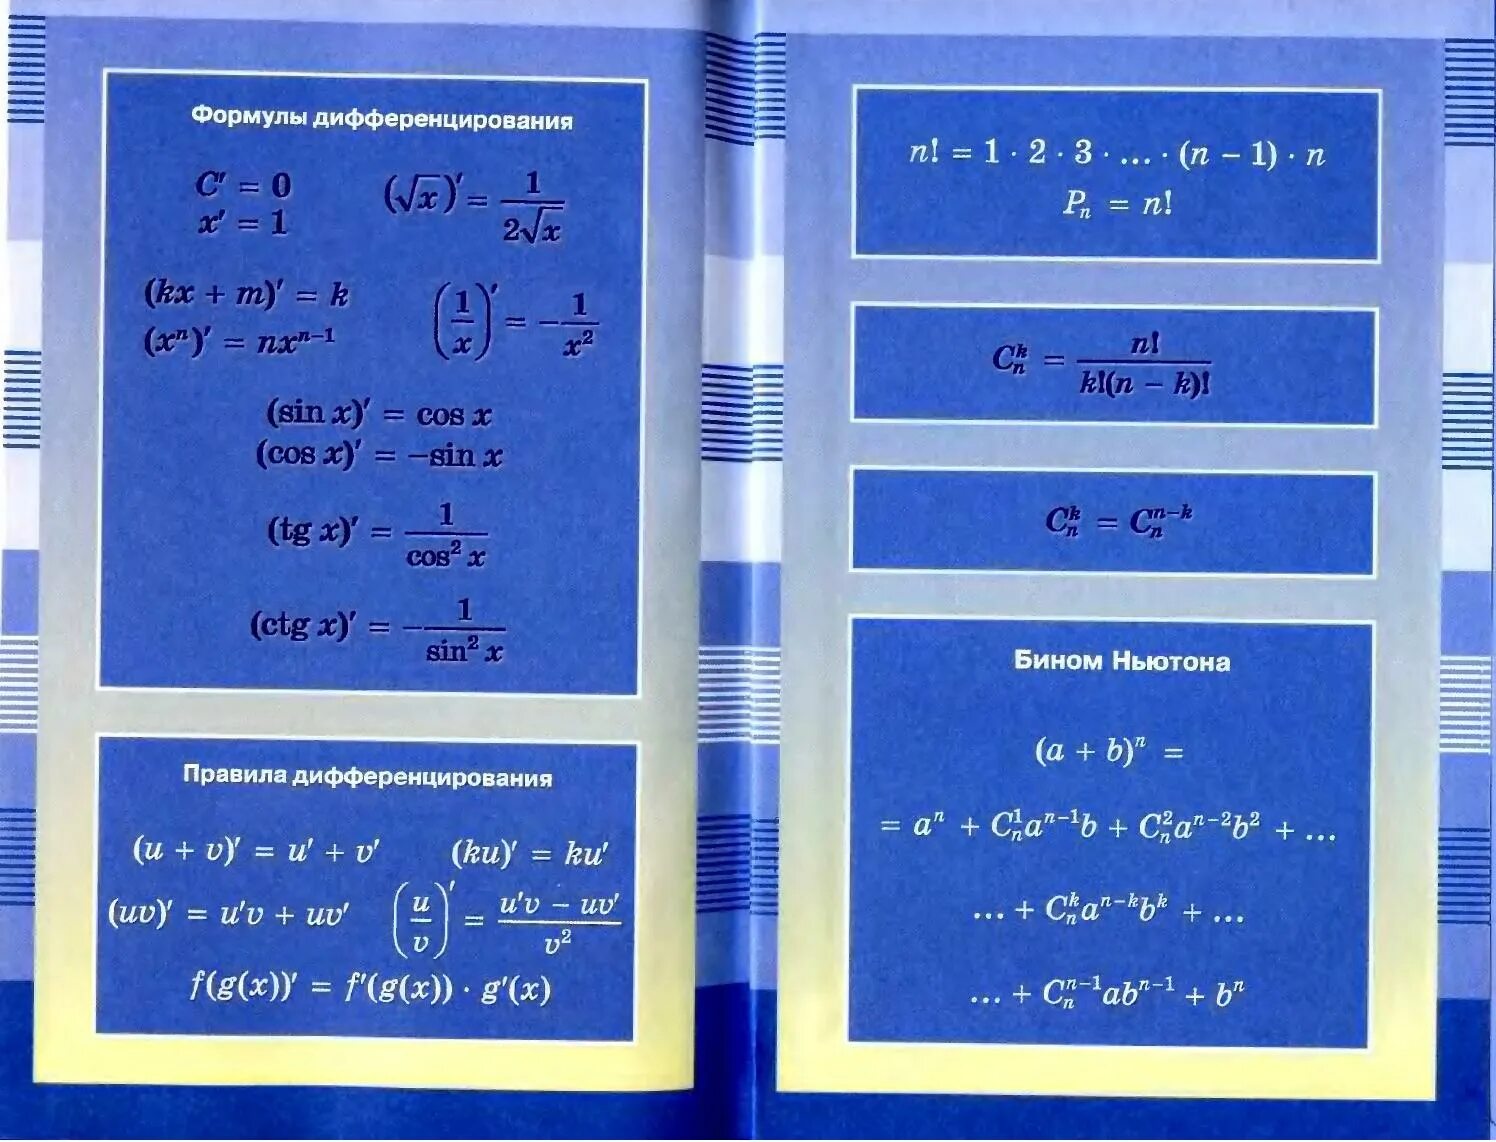 Математика 10 класс pdf. Форзац учебника Алгебра 10 класс Мордкович. Учебник Мордкович 10-11 класс Алгебра форзац. Задачник по алгебре 10 класс Мордкович форзац. Форзац учебника Алгебра 10 класс.